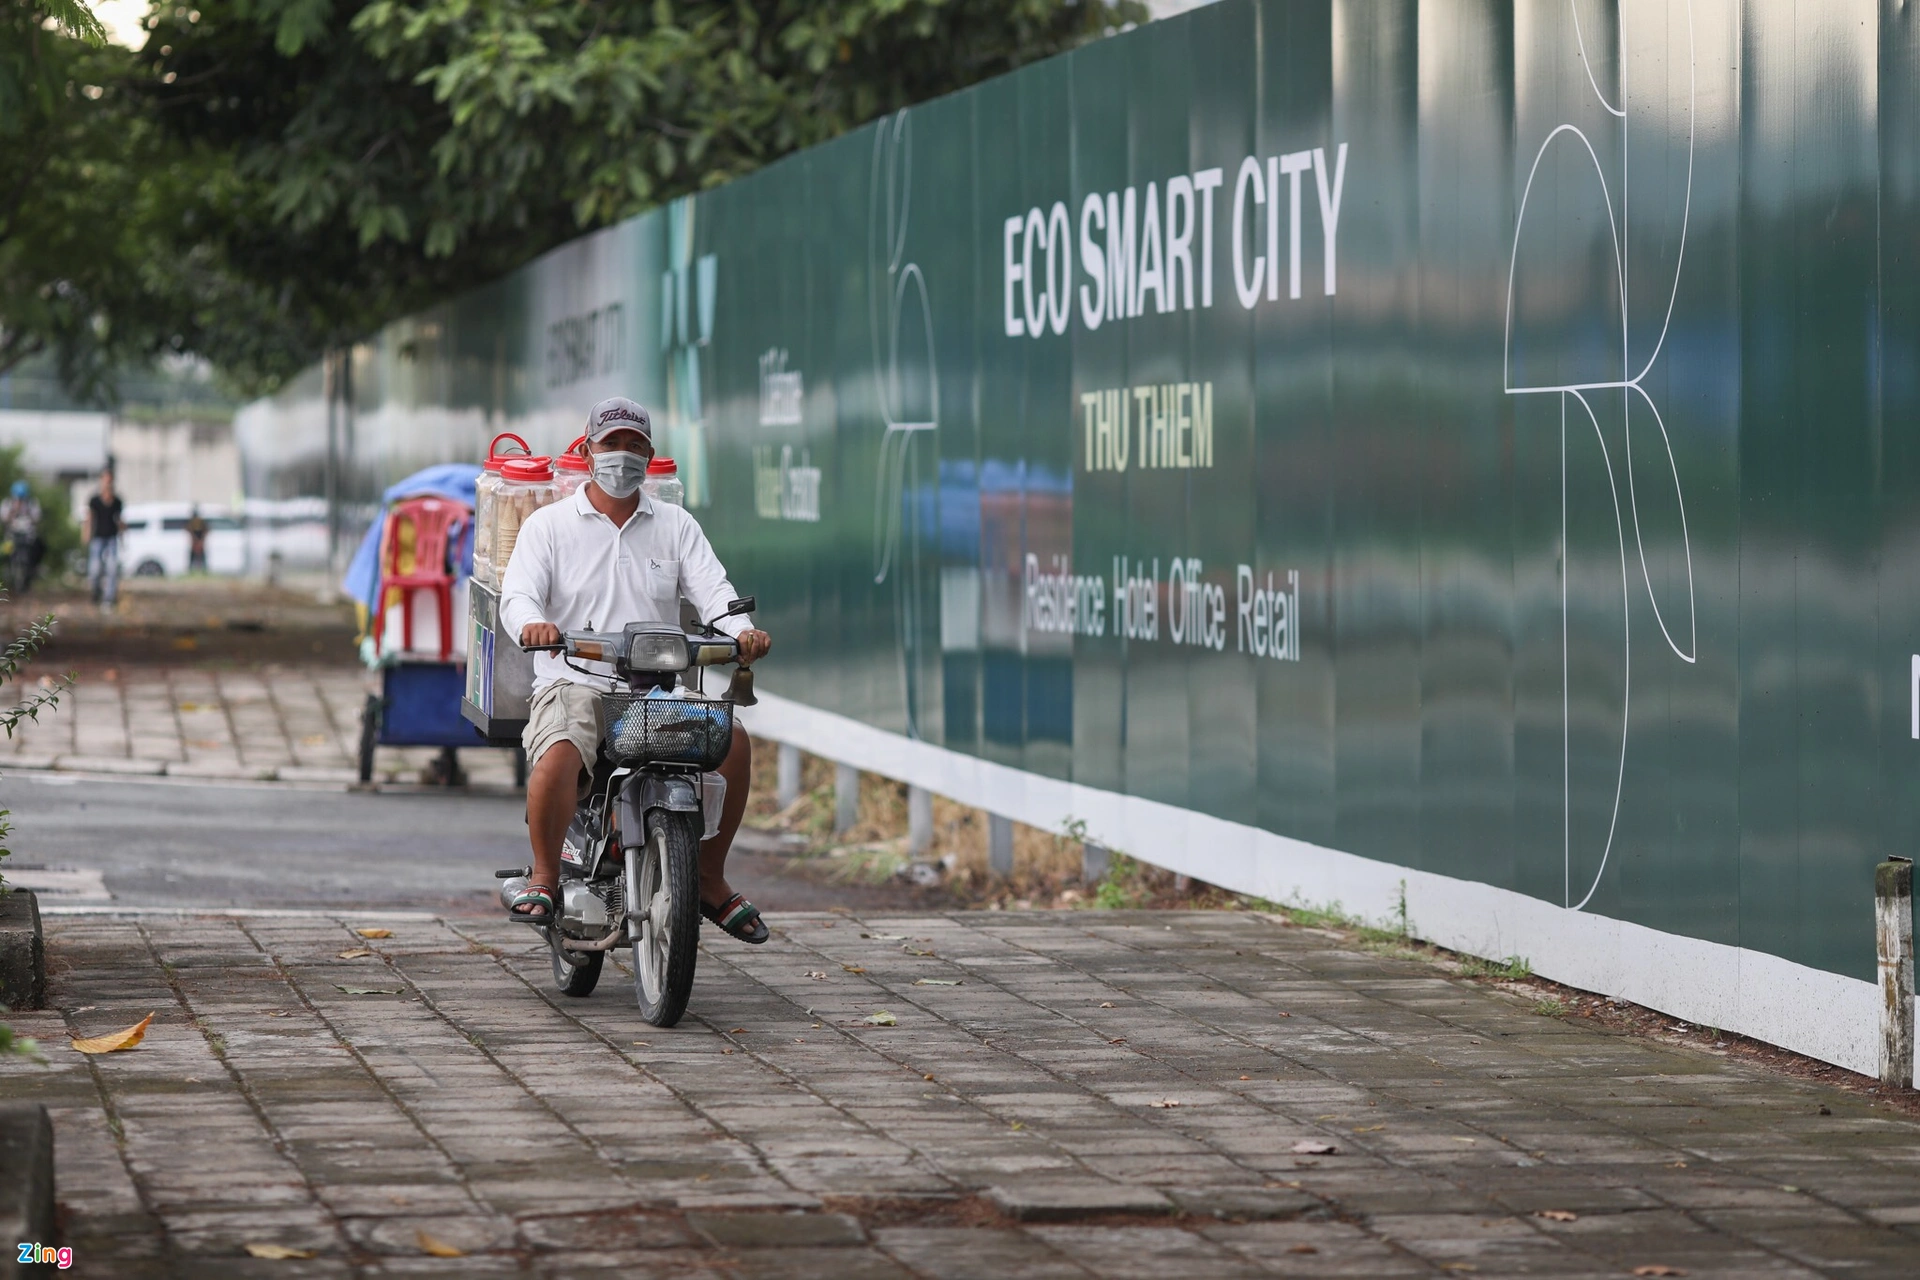 Tường bao khu phức hợp Lotte Eco Smart City Thủ Thiêm